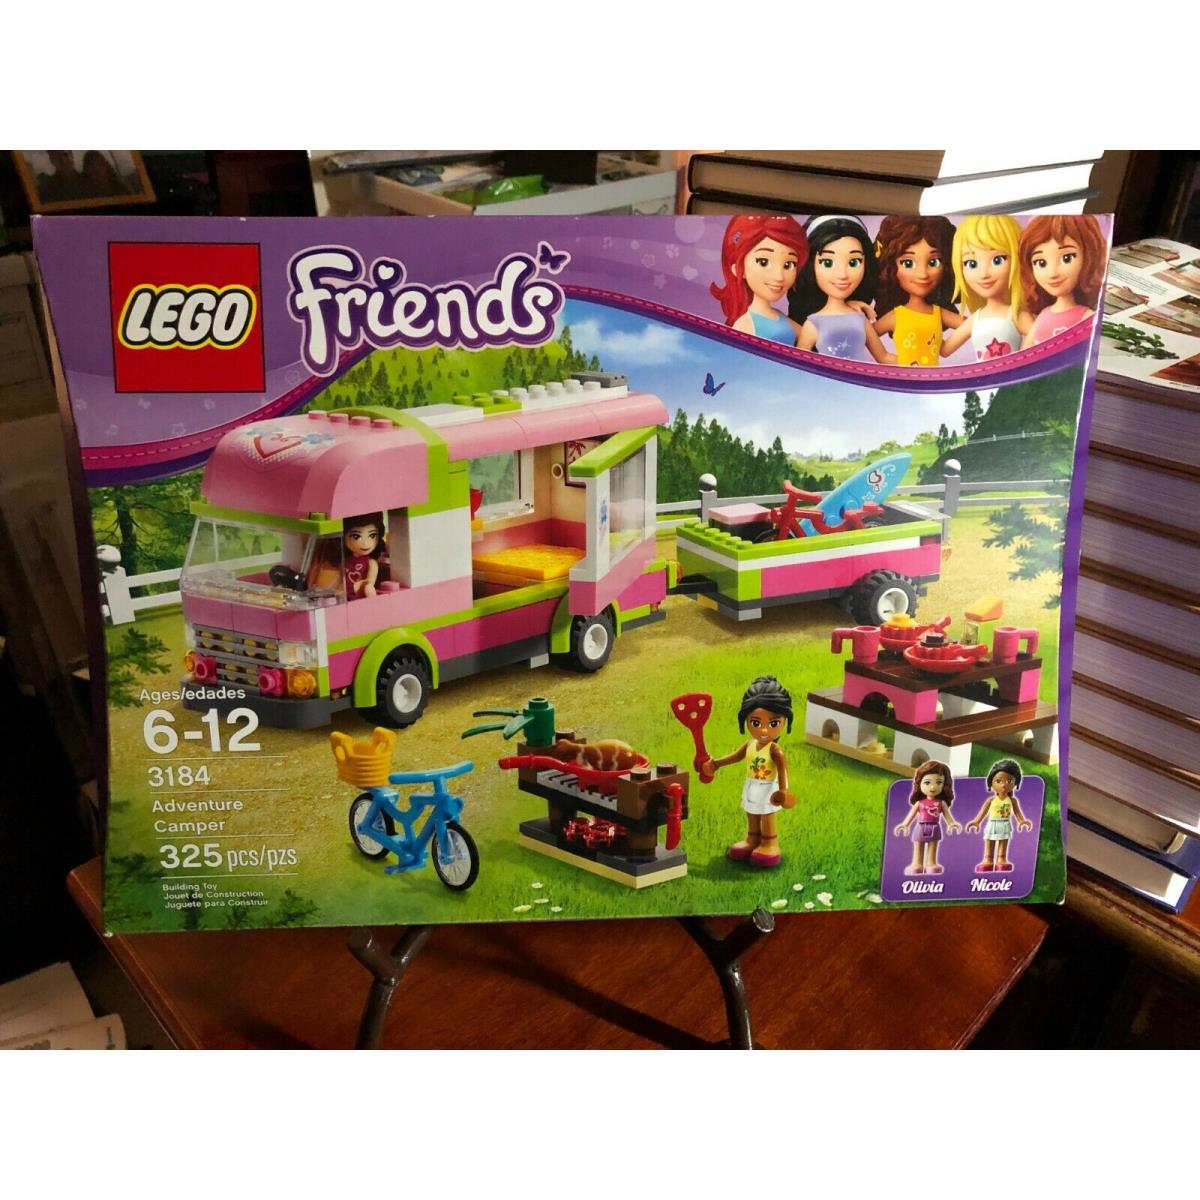 Lego Friends Set 3184 Adventure Camper